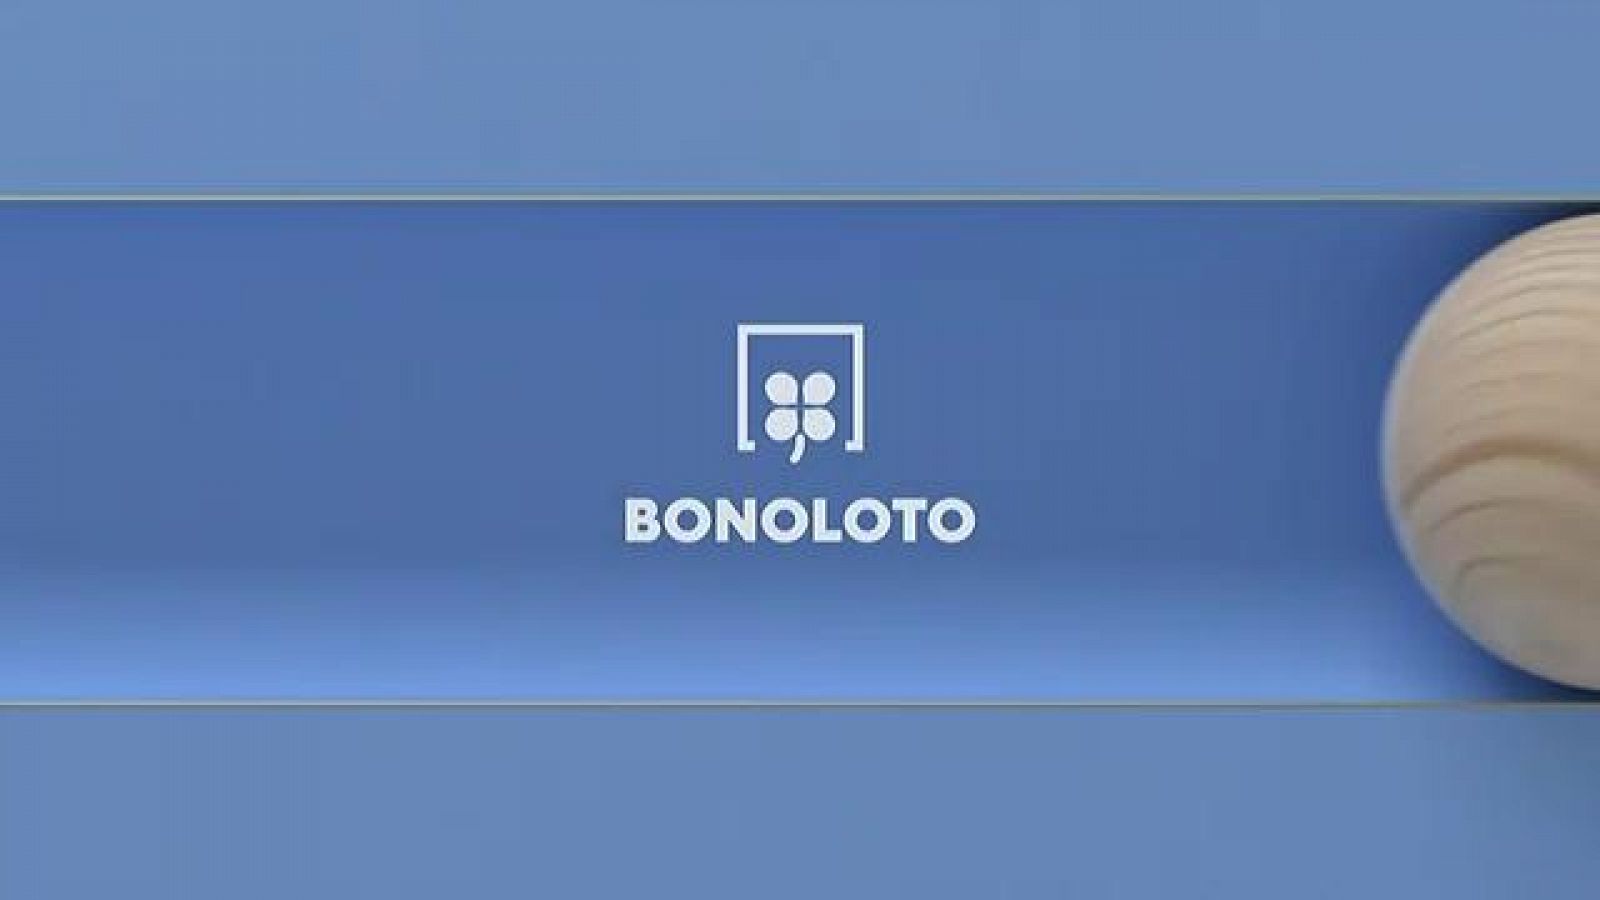 Bonoloto - 28/12/2020 - RTVE.es